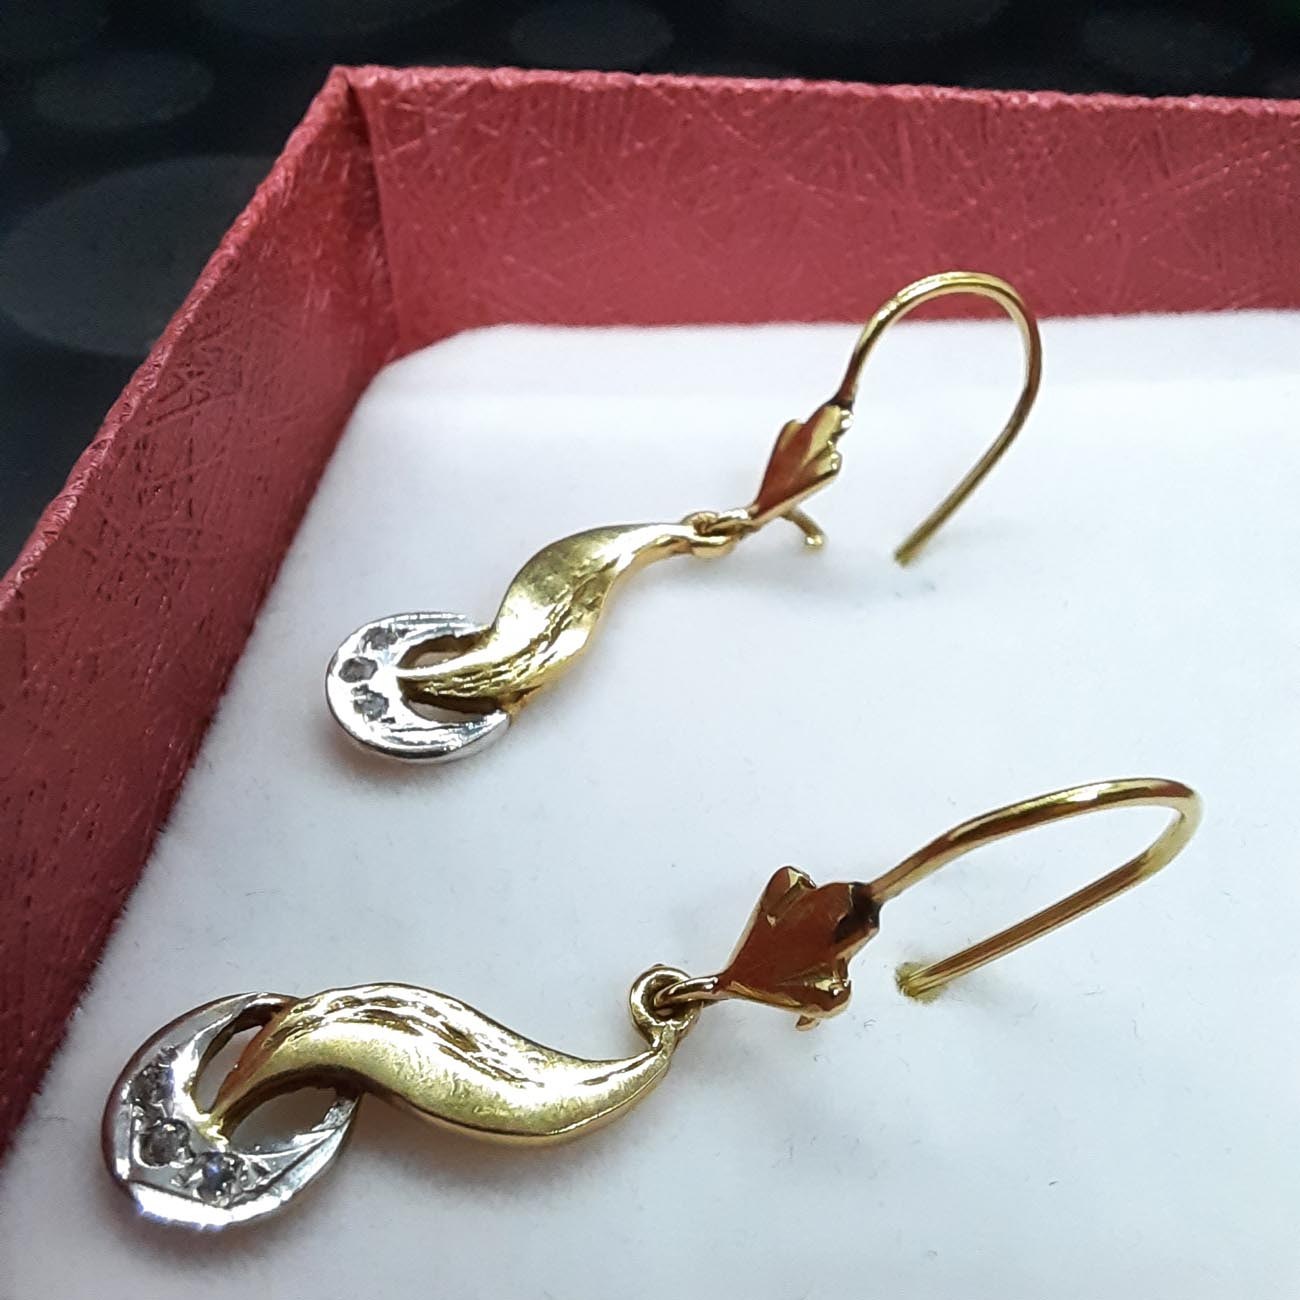 Χρυσά σκουλαρίκια ζιργκόν